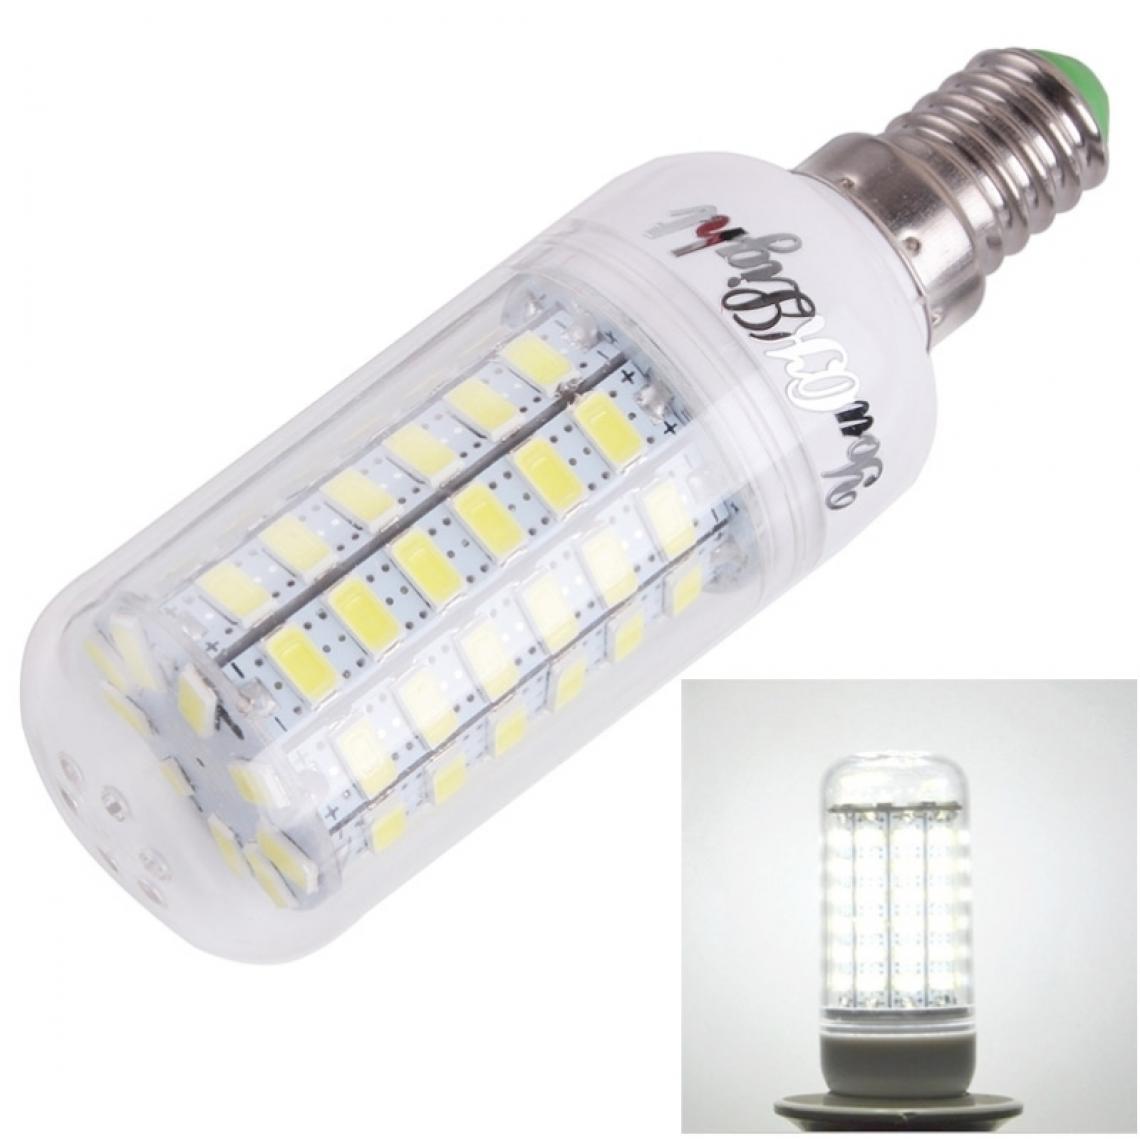 Wewoo - Ampoule blanc E14 18W 1700LM CRI 80 69 LED SMD 5730 de maïs, AC 220-240V - Ampoules LED